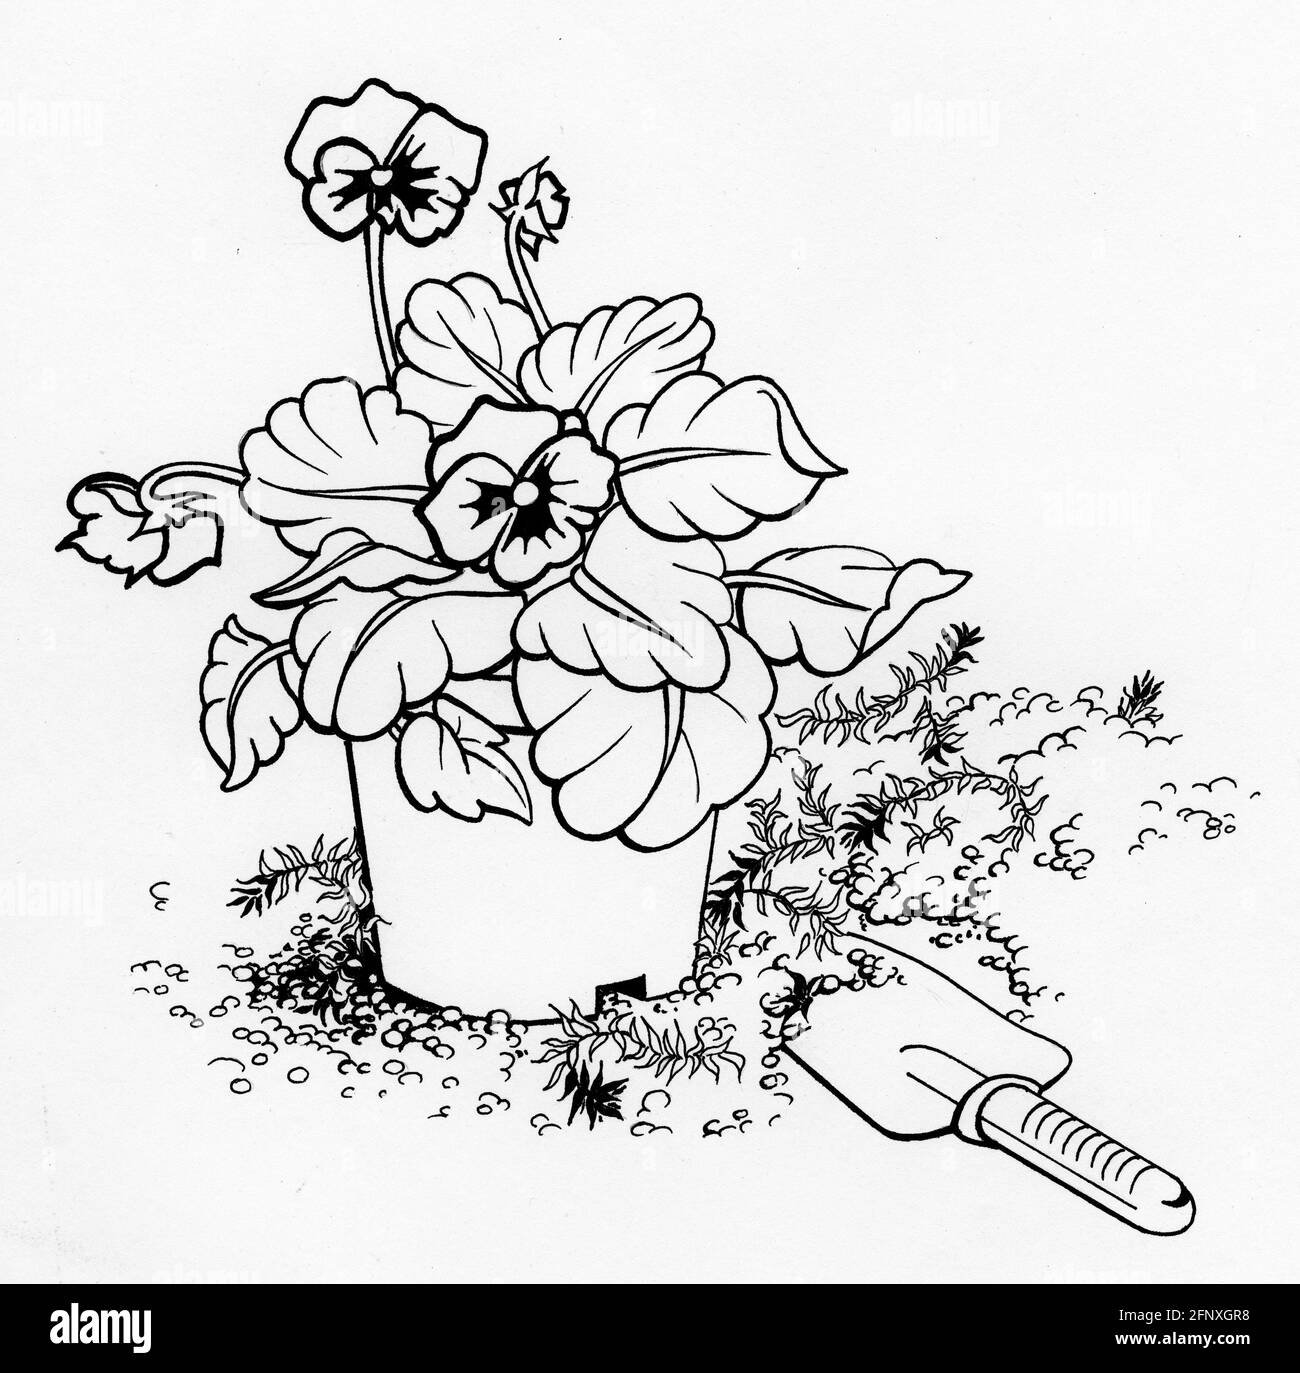 Un dessin emblématique d'une petite plante et d'un jardin en sansy truelle Banque D'Images